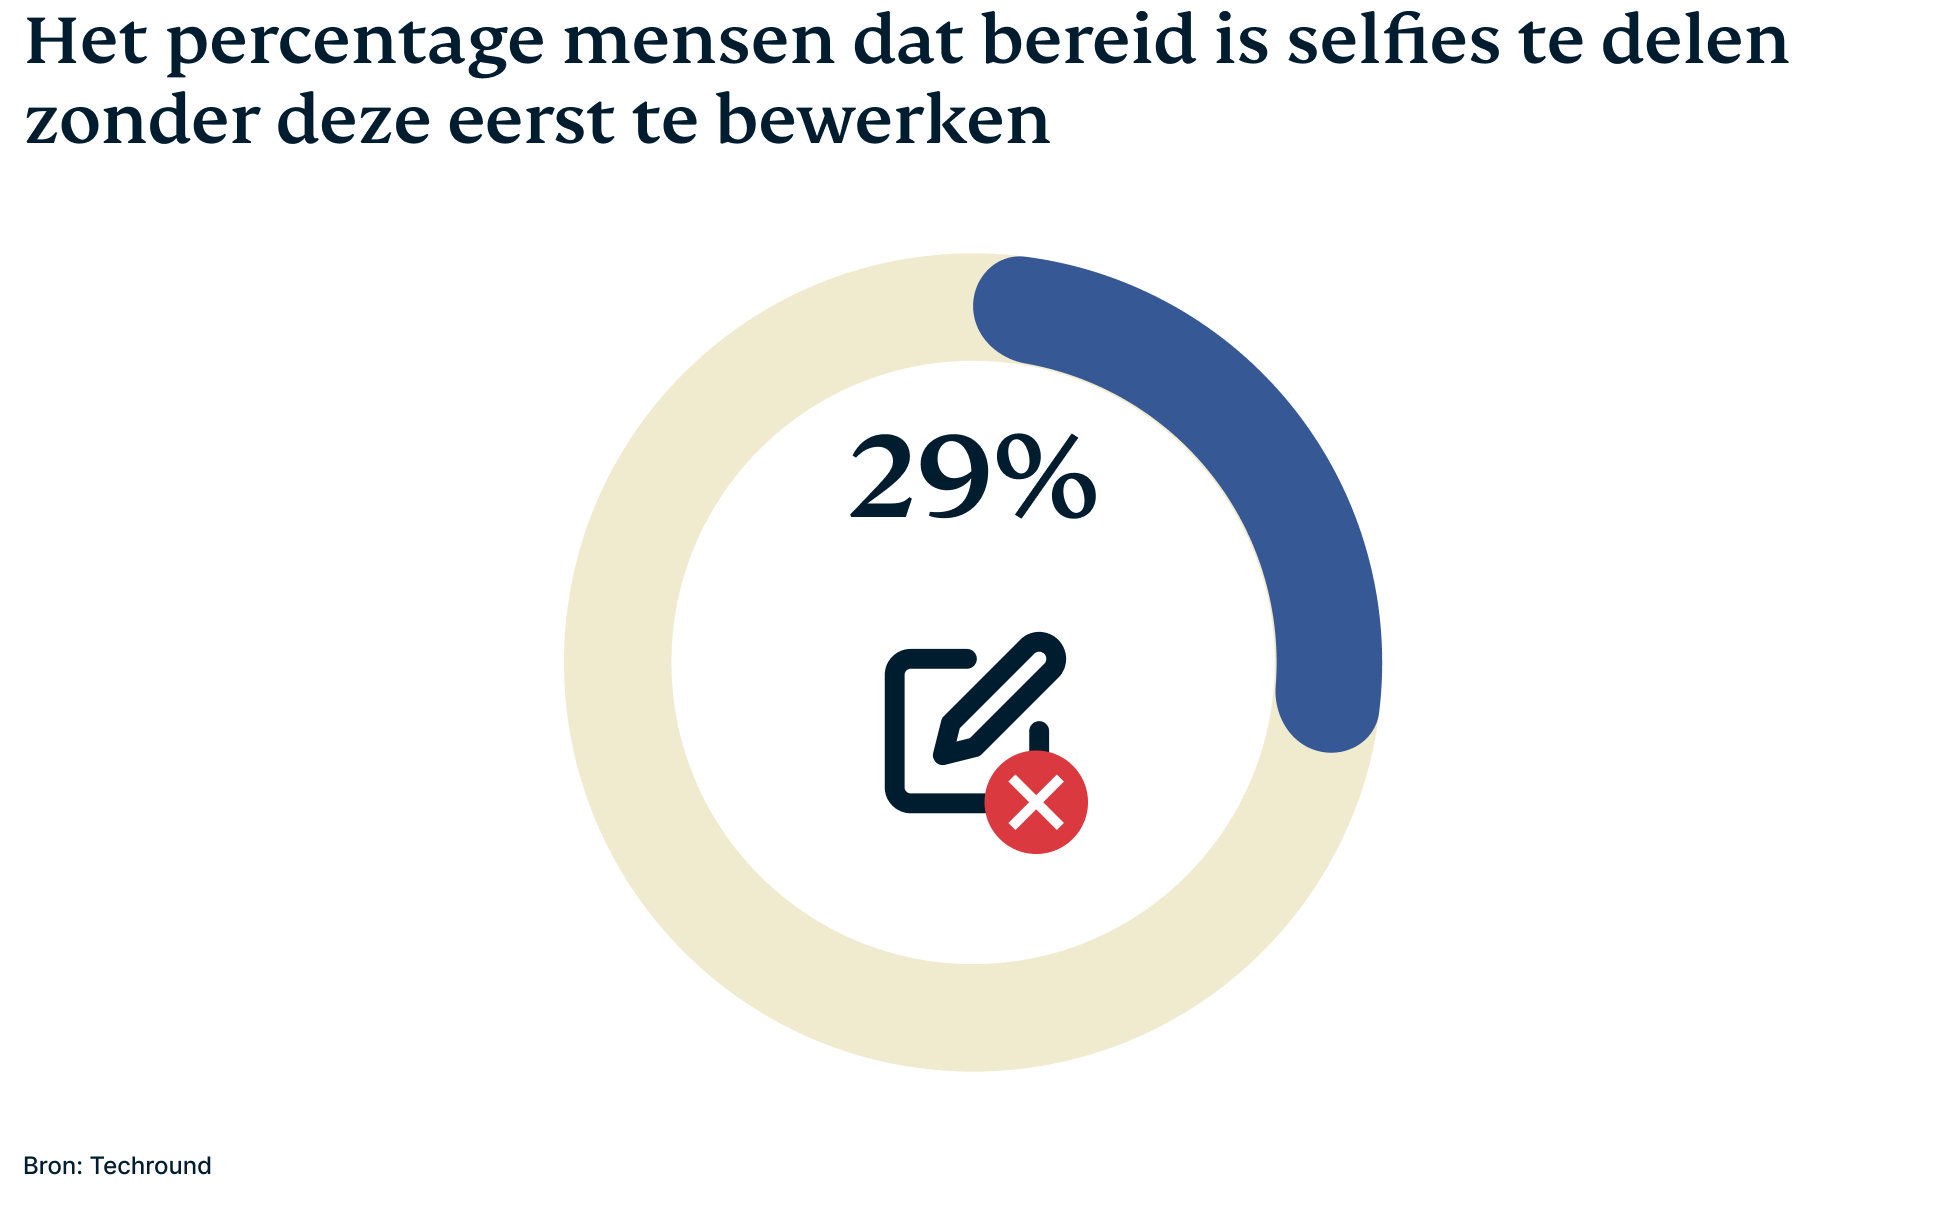 Percentage mensen dat bereid is selfies te delen zonder deze eerst te bewerken.